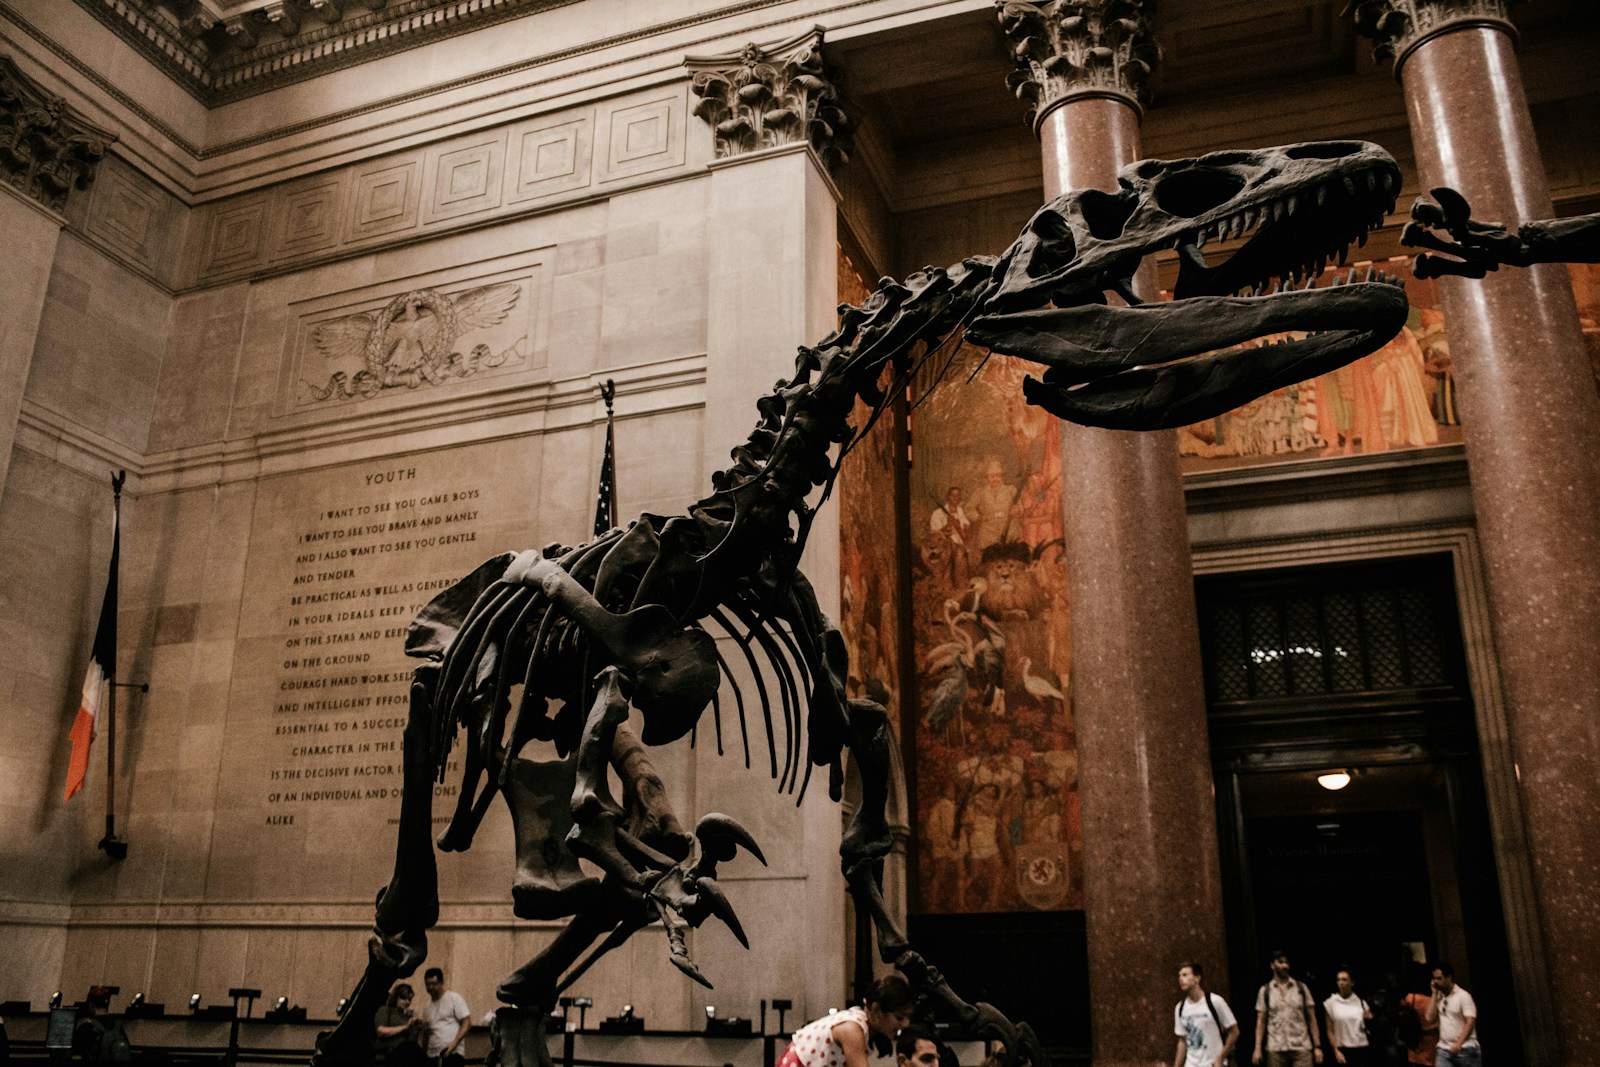 Squelette de dinosaure dans un musée majestueux.